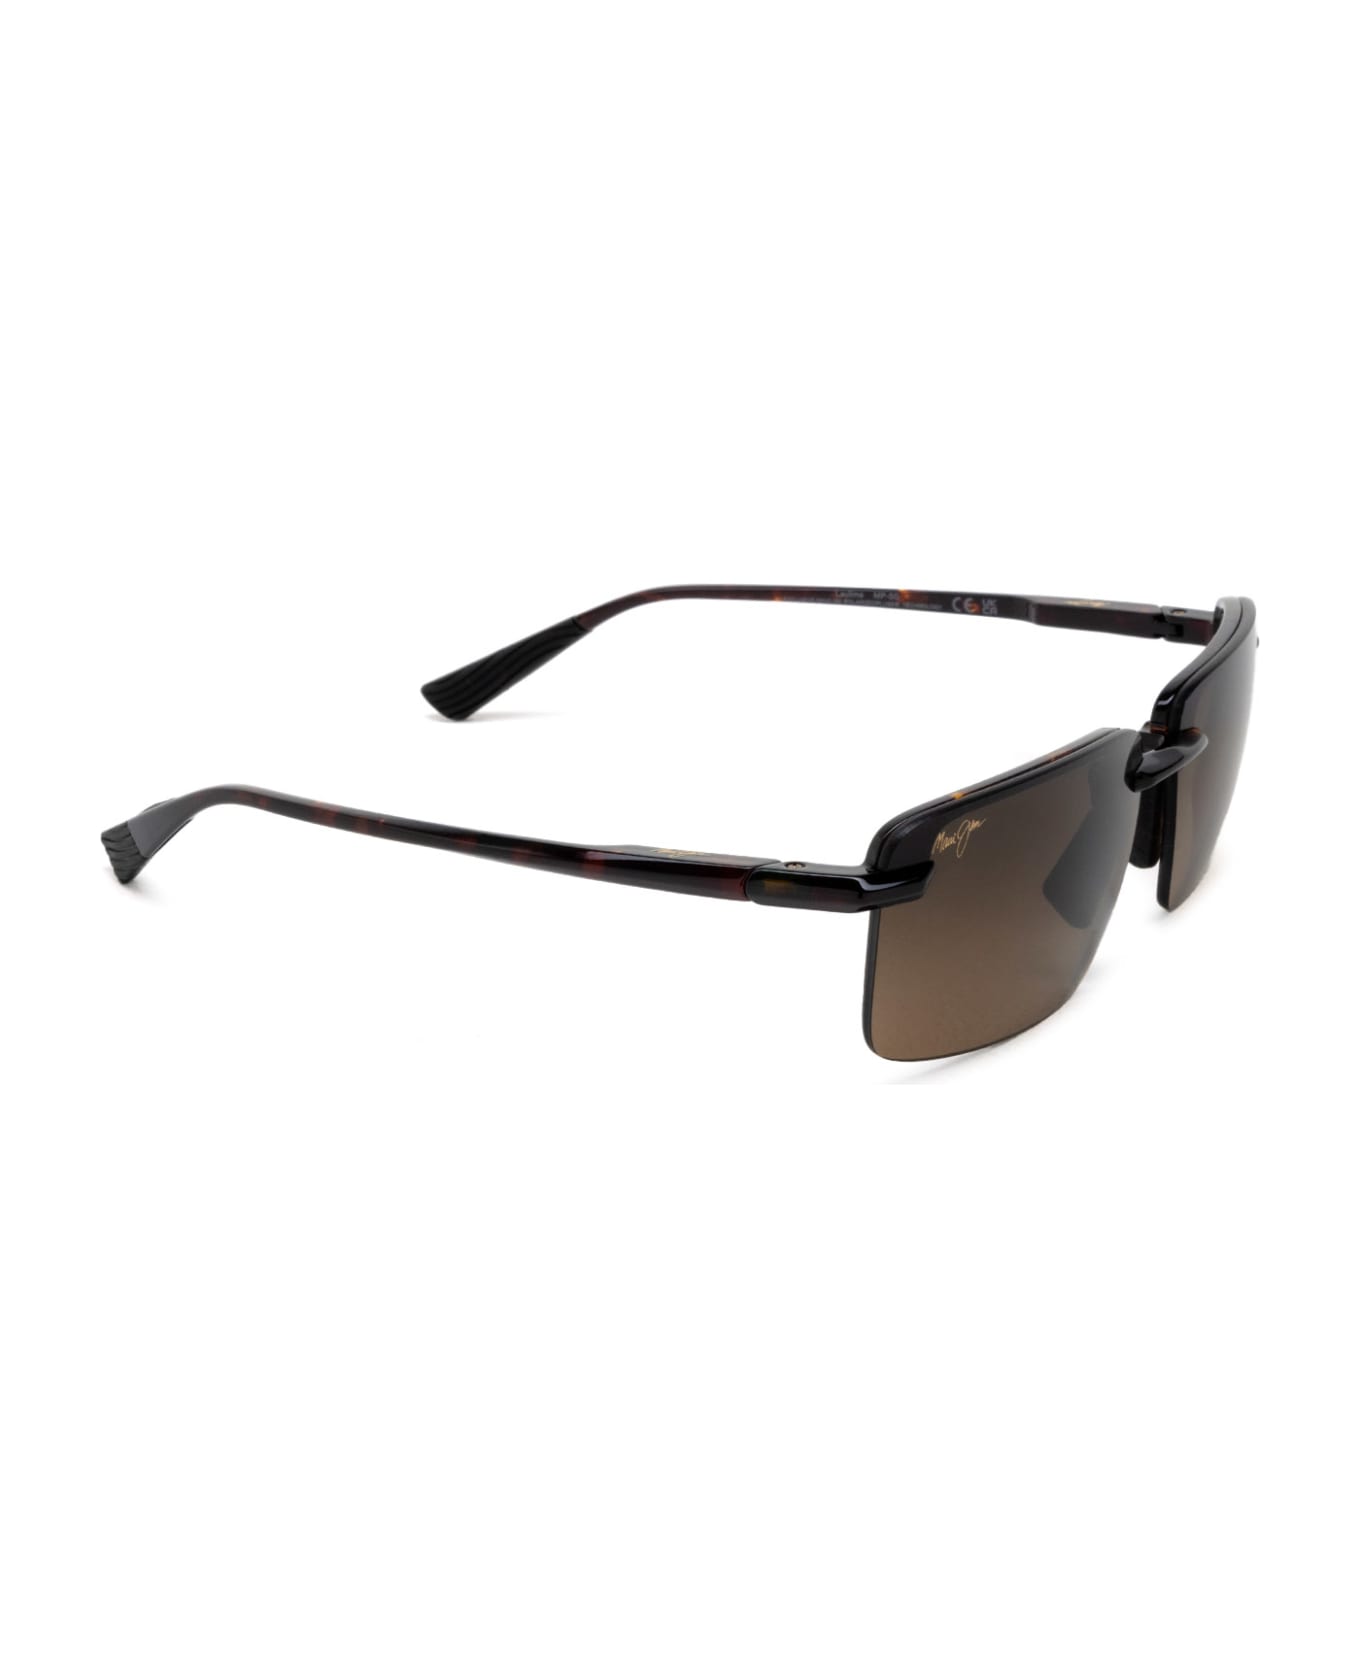 Maui Jim Mj626 Shiny Dark Havana Sunglasses - Shiny Dark Havana サングラス